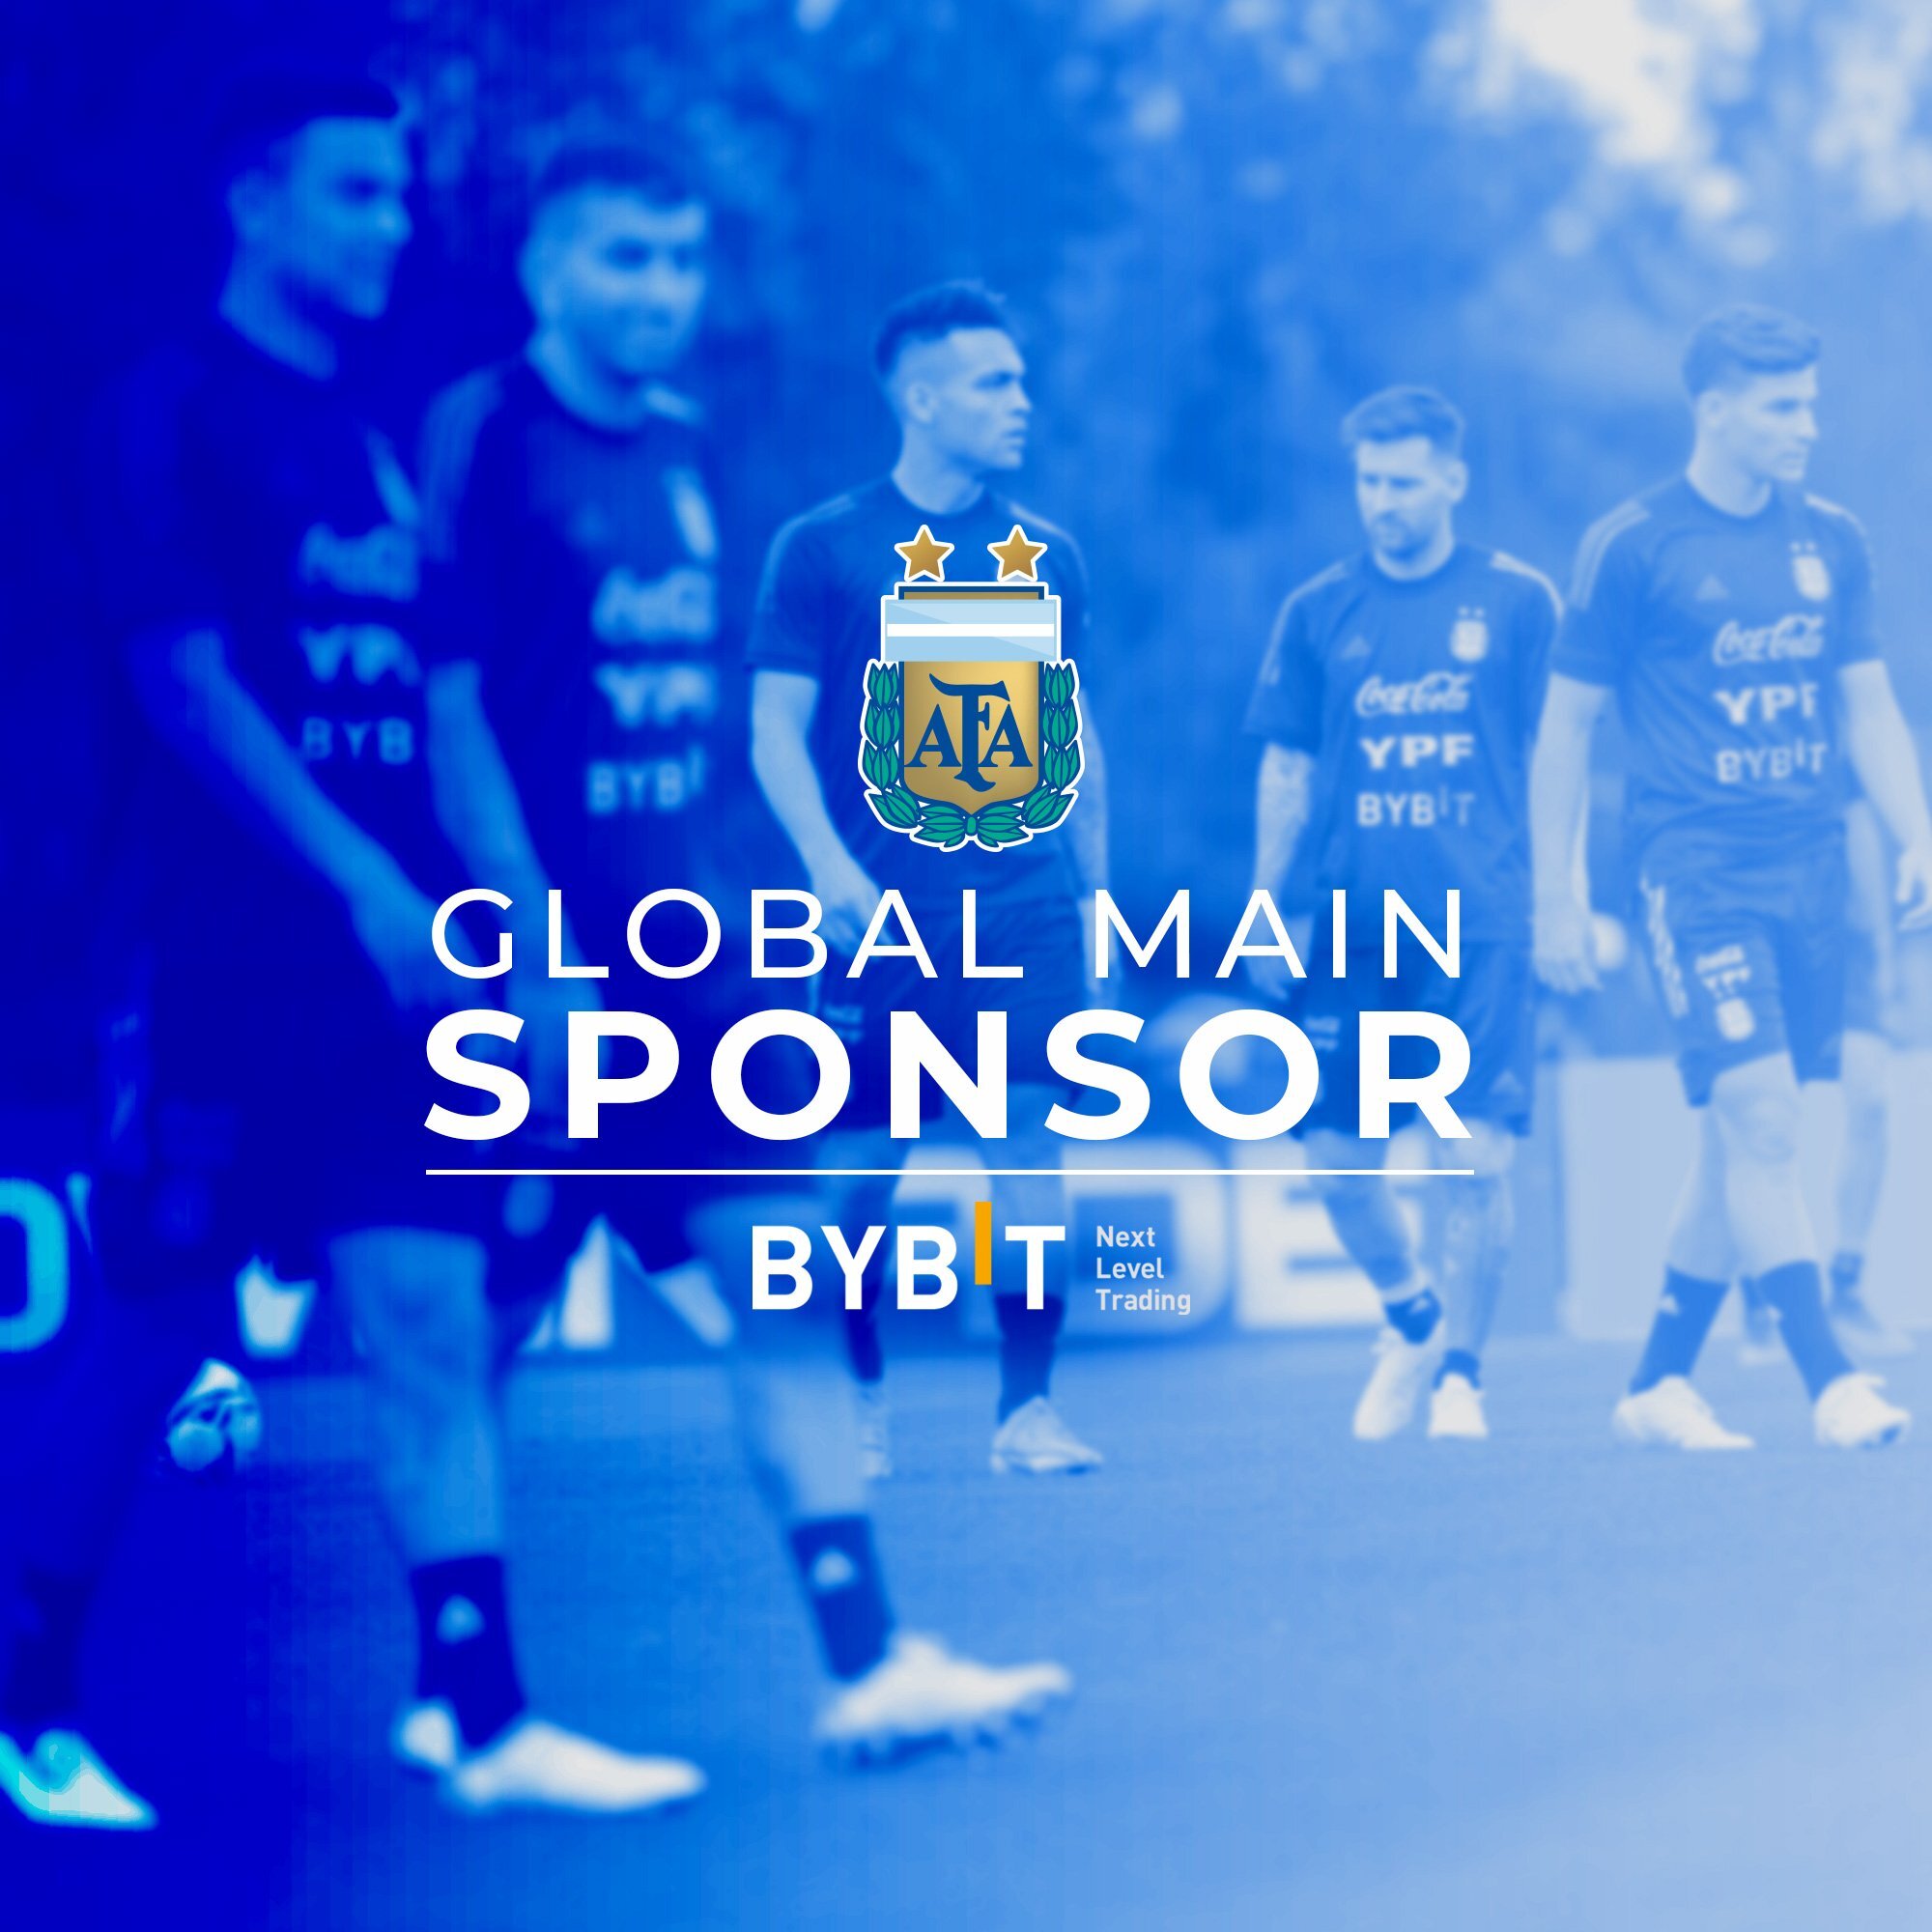 Sàn giao dịch Bybit trở thành nhà tài trợ toàn cầu cho đội tuyển bóng đá quốc gia Argentina